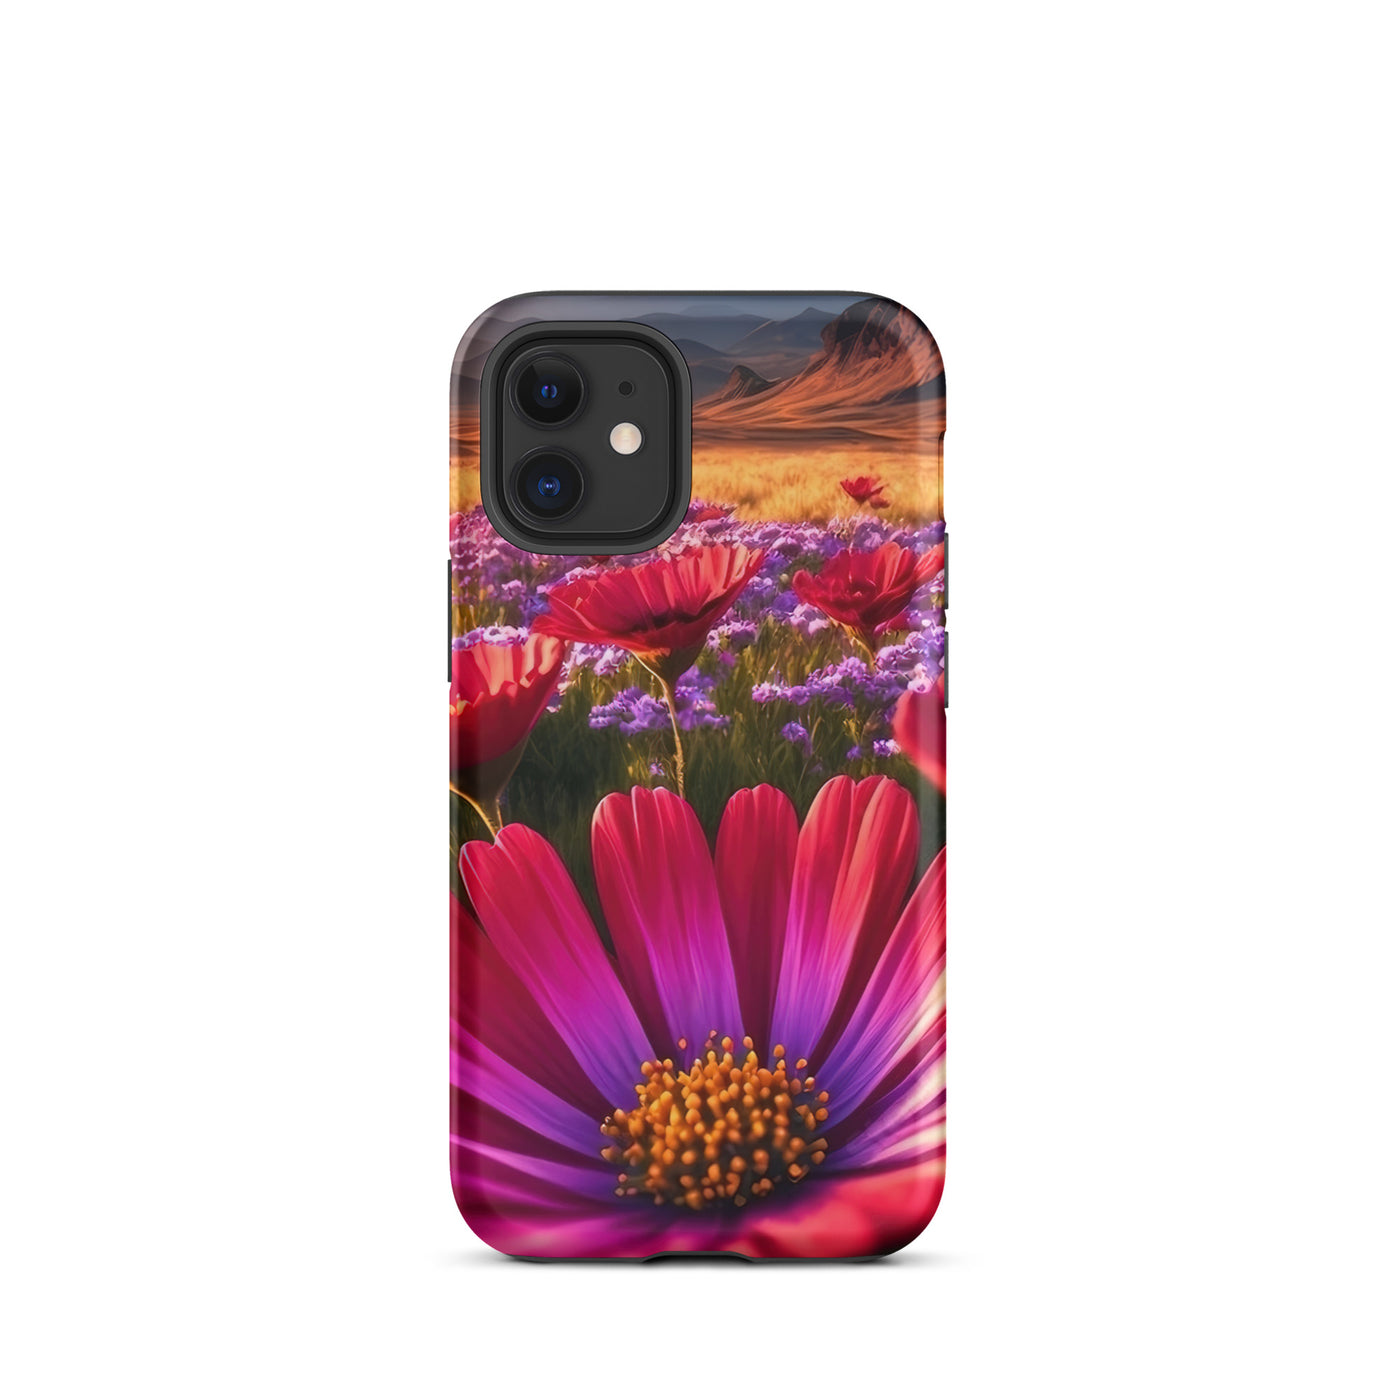 Wünderschöne Blumen und Berge im Hintergrund - iPhone Schutzhülle (robust) berge xxx iPhone 12 mini